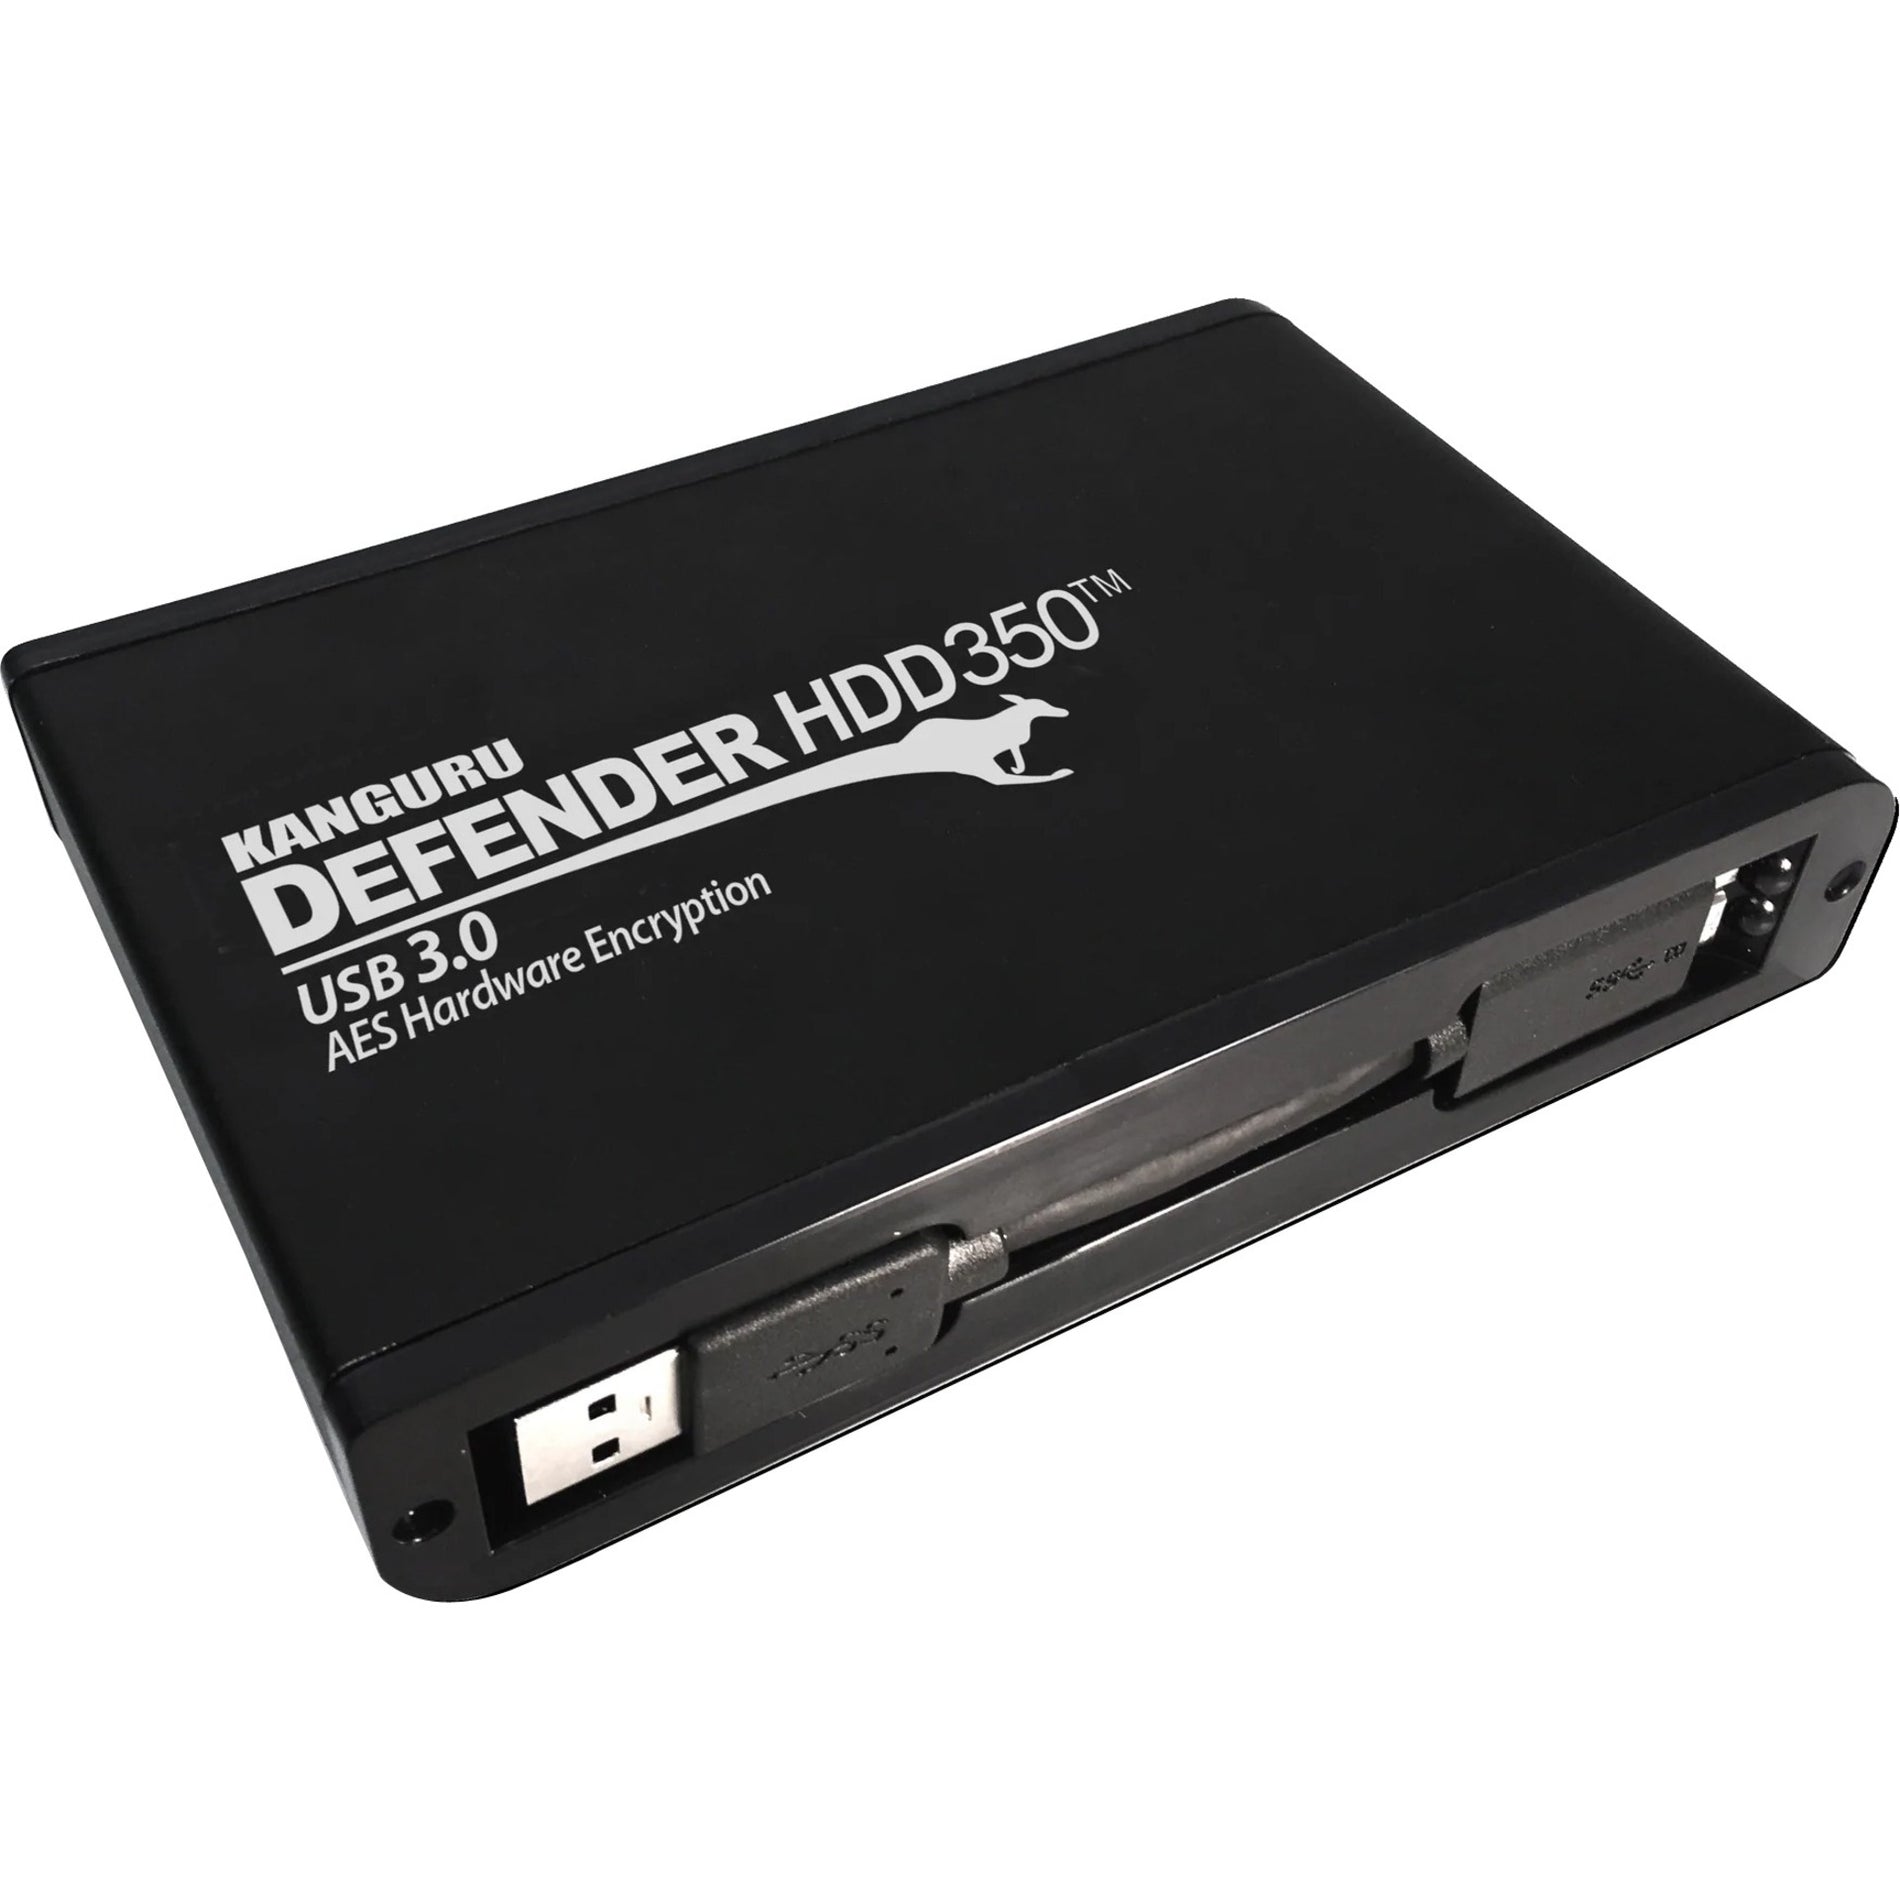 Kanguru KDH3B-350F-1T Defender HDD350 Hard Drive, 1TB, USB 3.2 (Gen 1), 256-bit Encryption